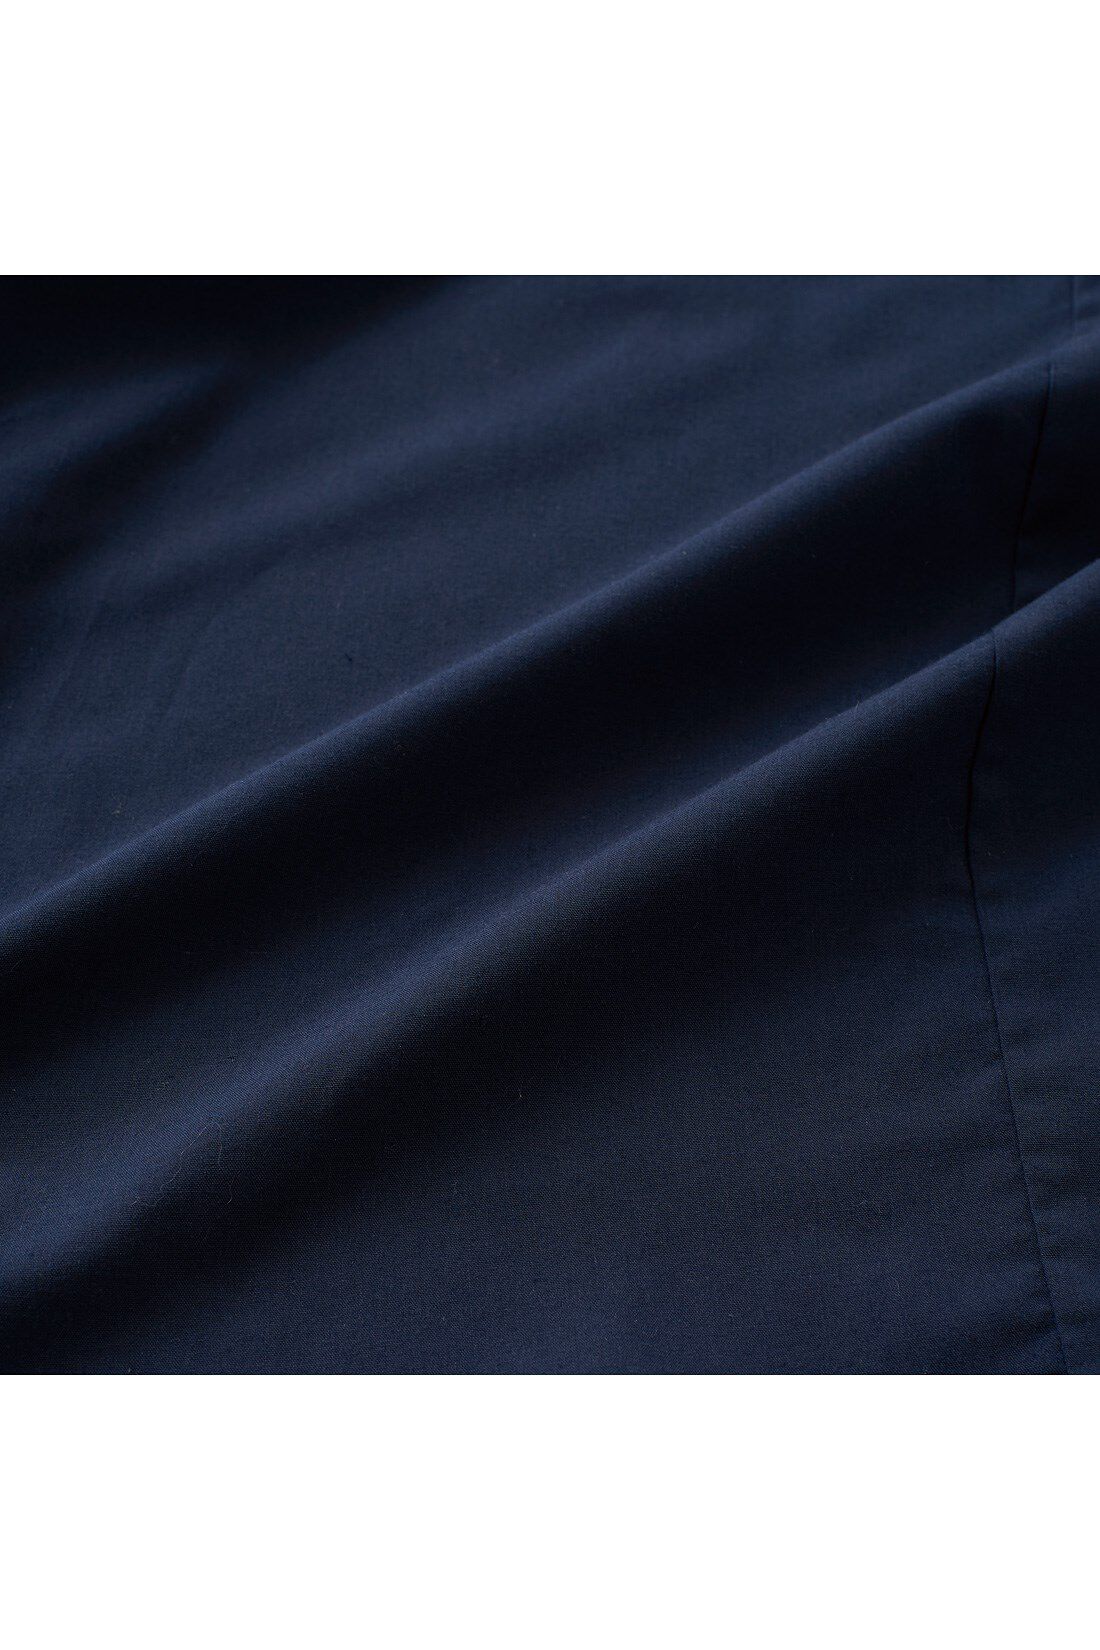 DRECO by IEDIT|DRECO by IEDIT たっぷりフレアーが印象的な　Ａラインシャツチュニック〈ネイビー〉|季節を問わずさわやかに着られる綿混素材。